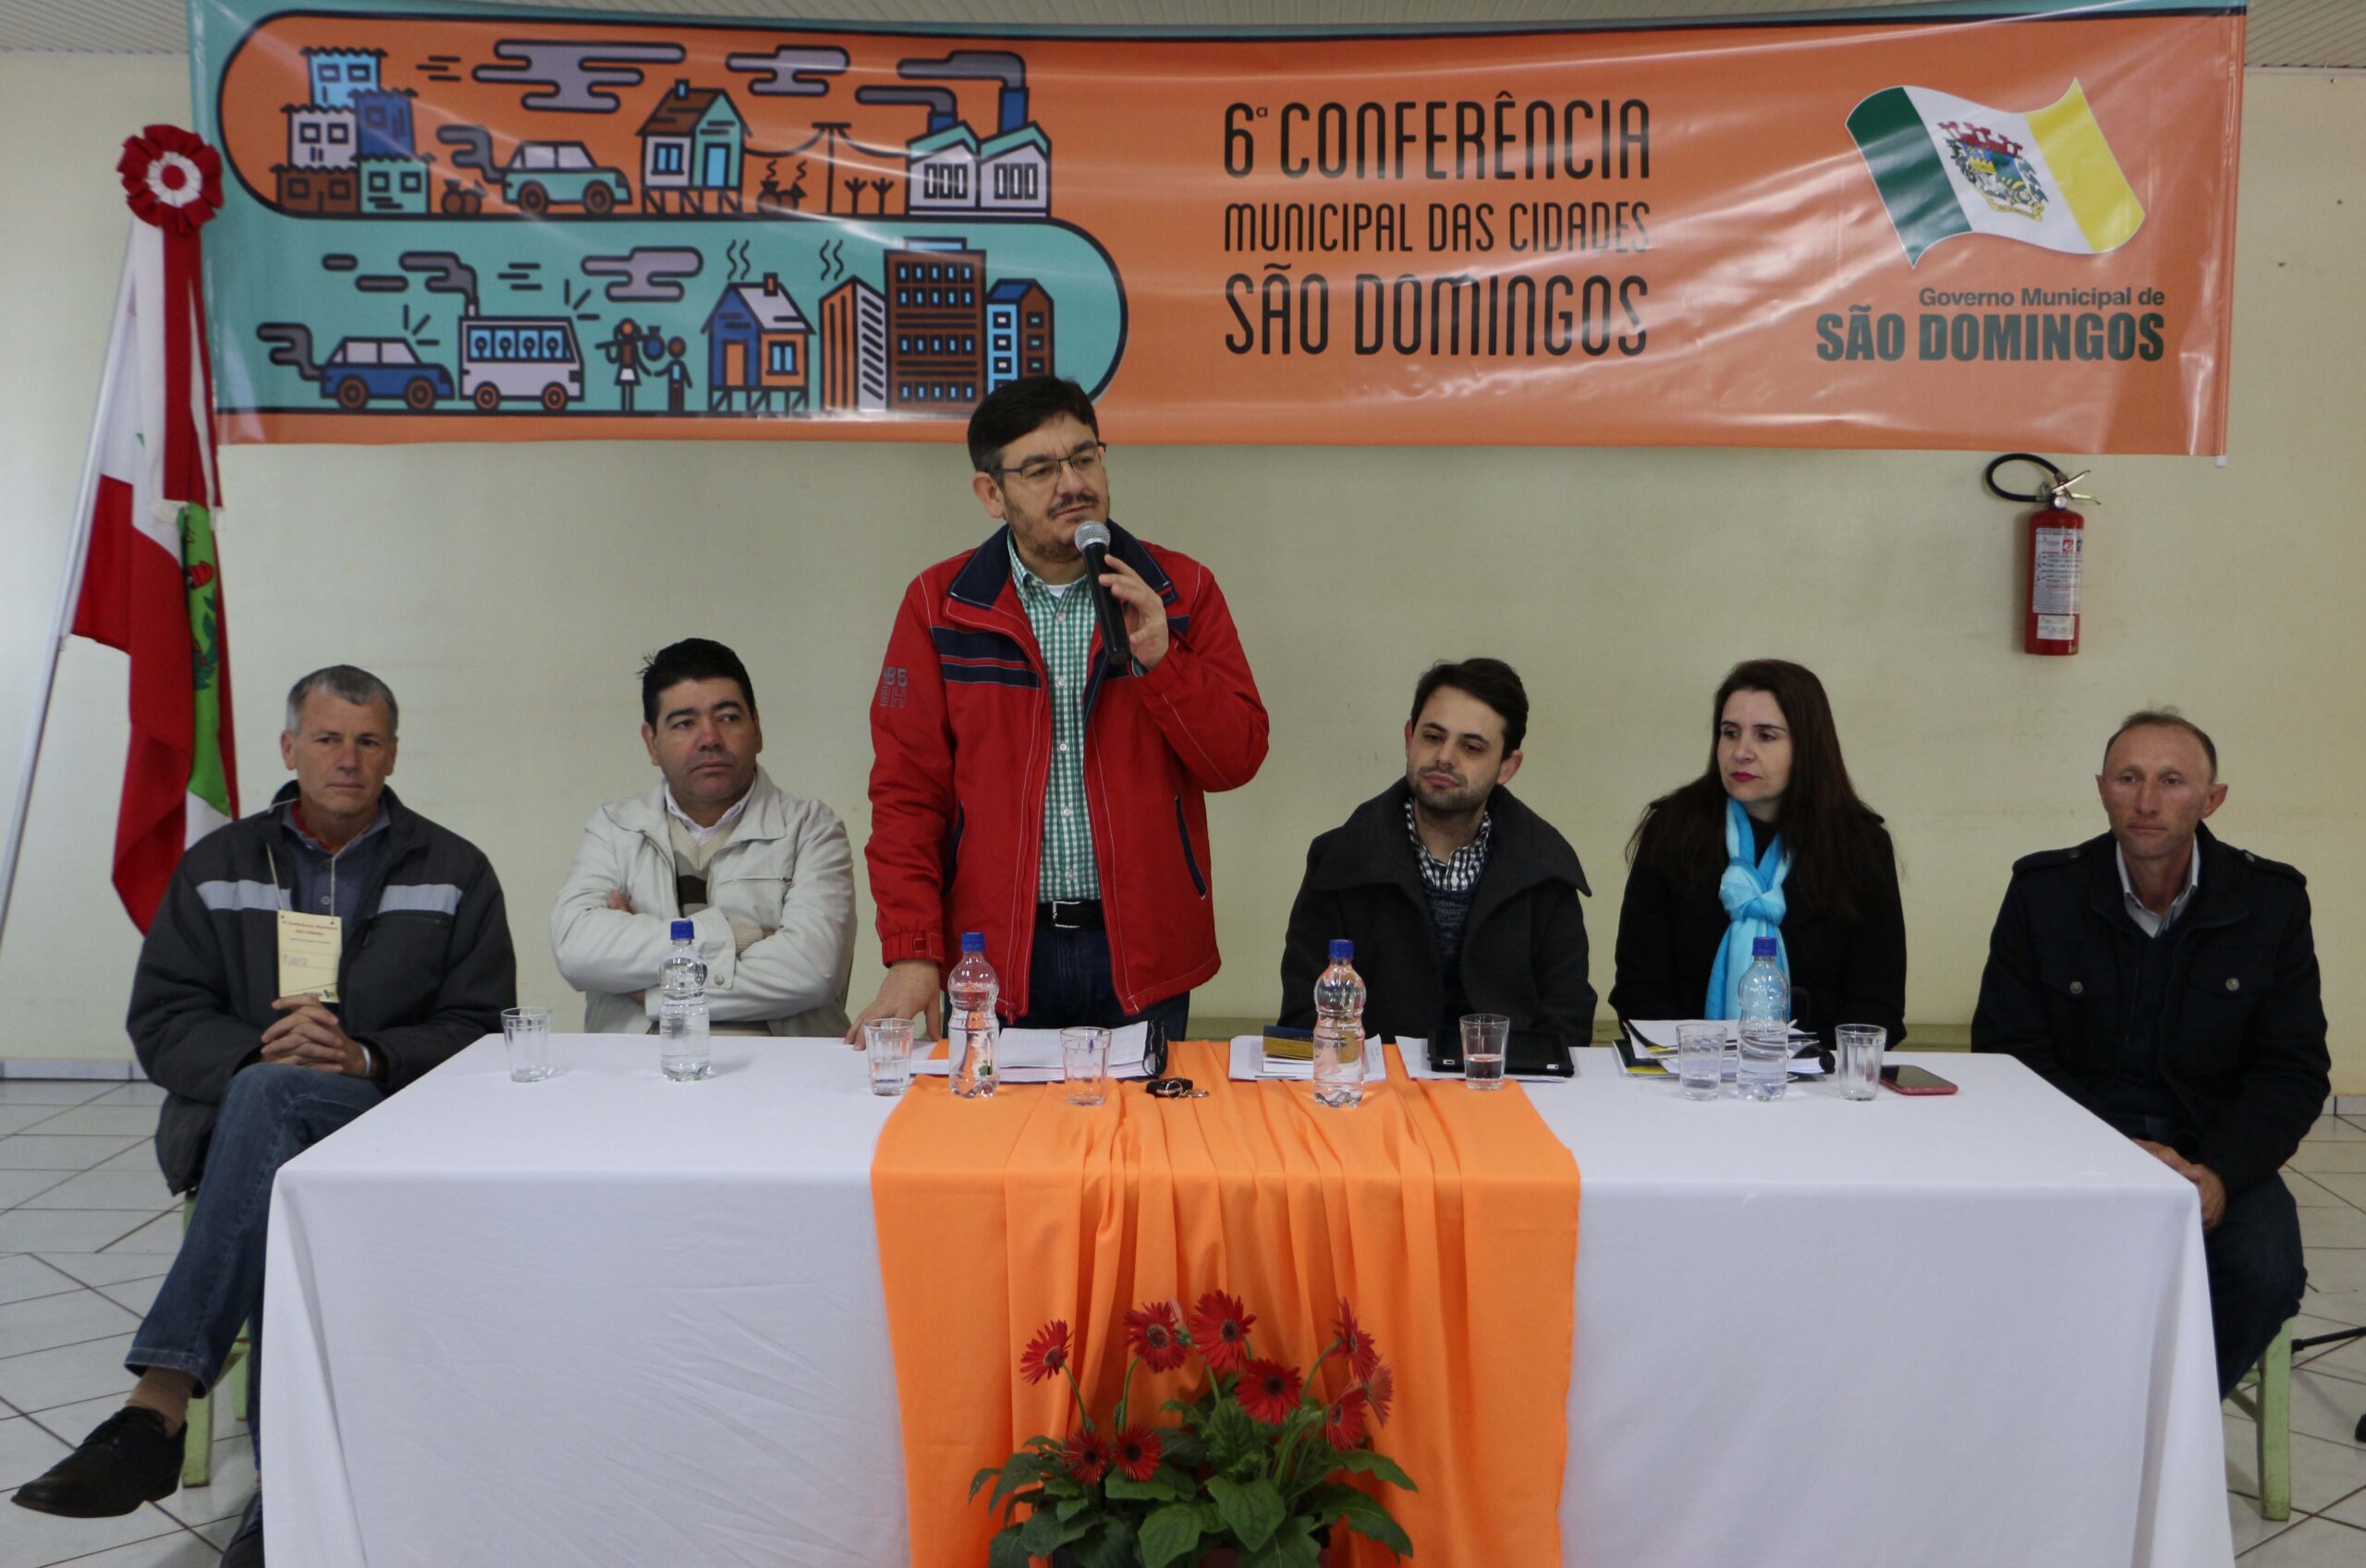 You are currently viewing Governo de São Domingos promove 6ª Conferência Municipal das Cidades